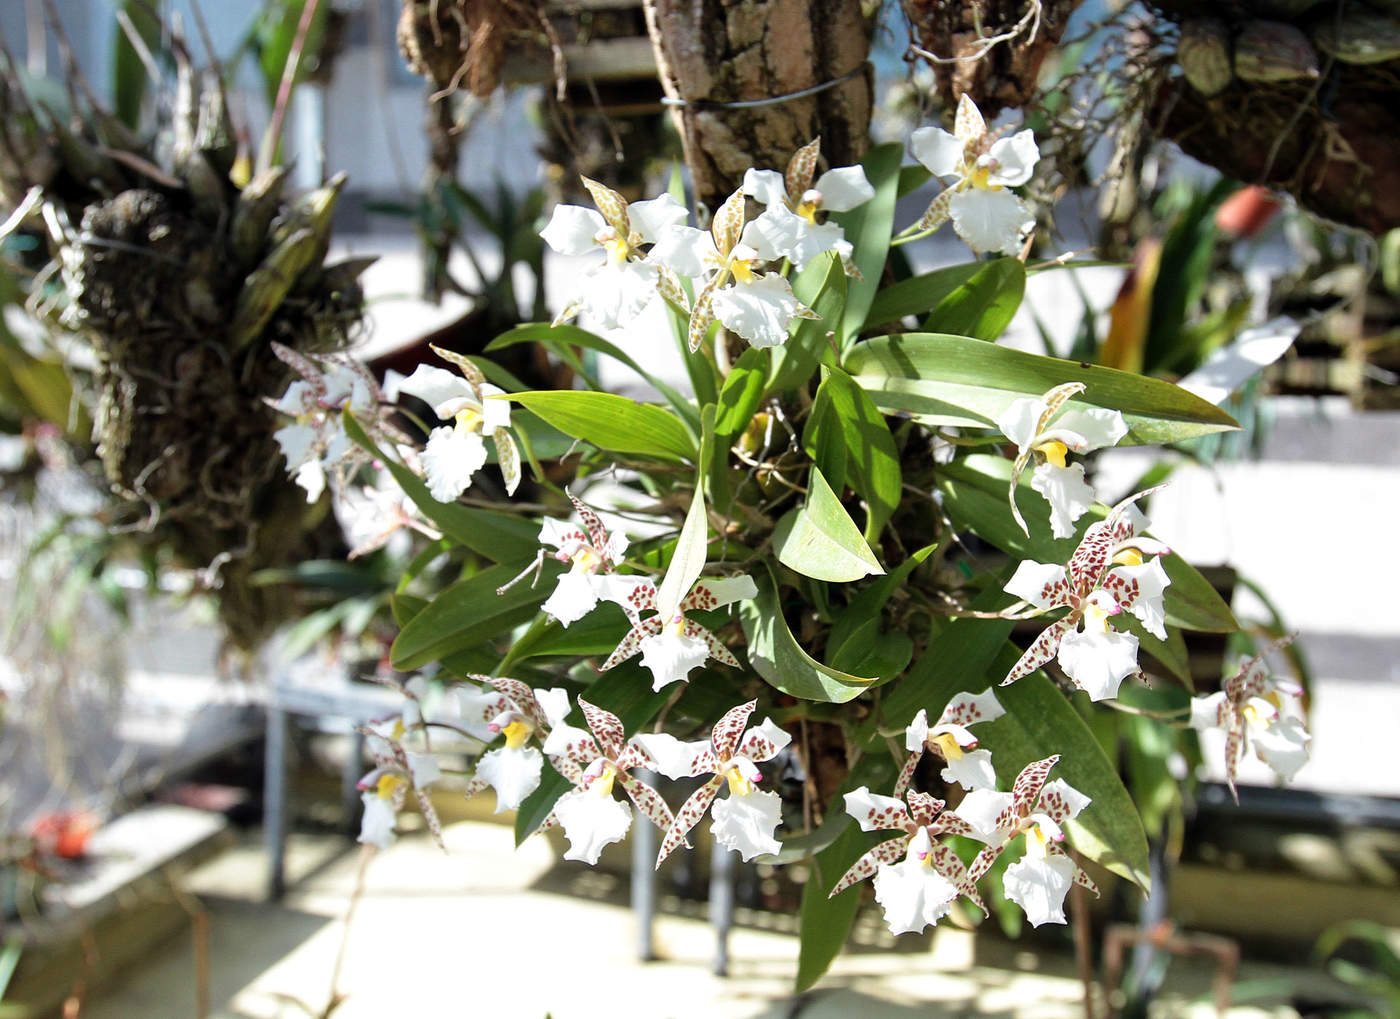 Las orquídeas juegan un papel ecológico de importancia, ya que ayudan a retener agua, a la infiltración, al recelamiento de nutrientes. (ARCHIVO)